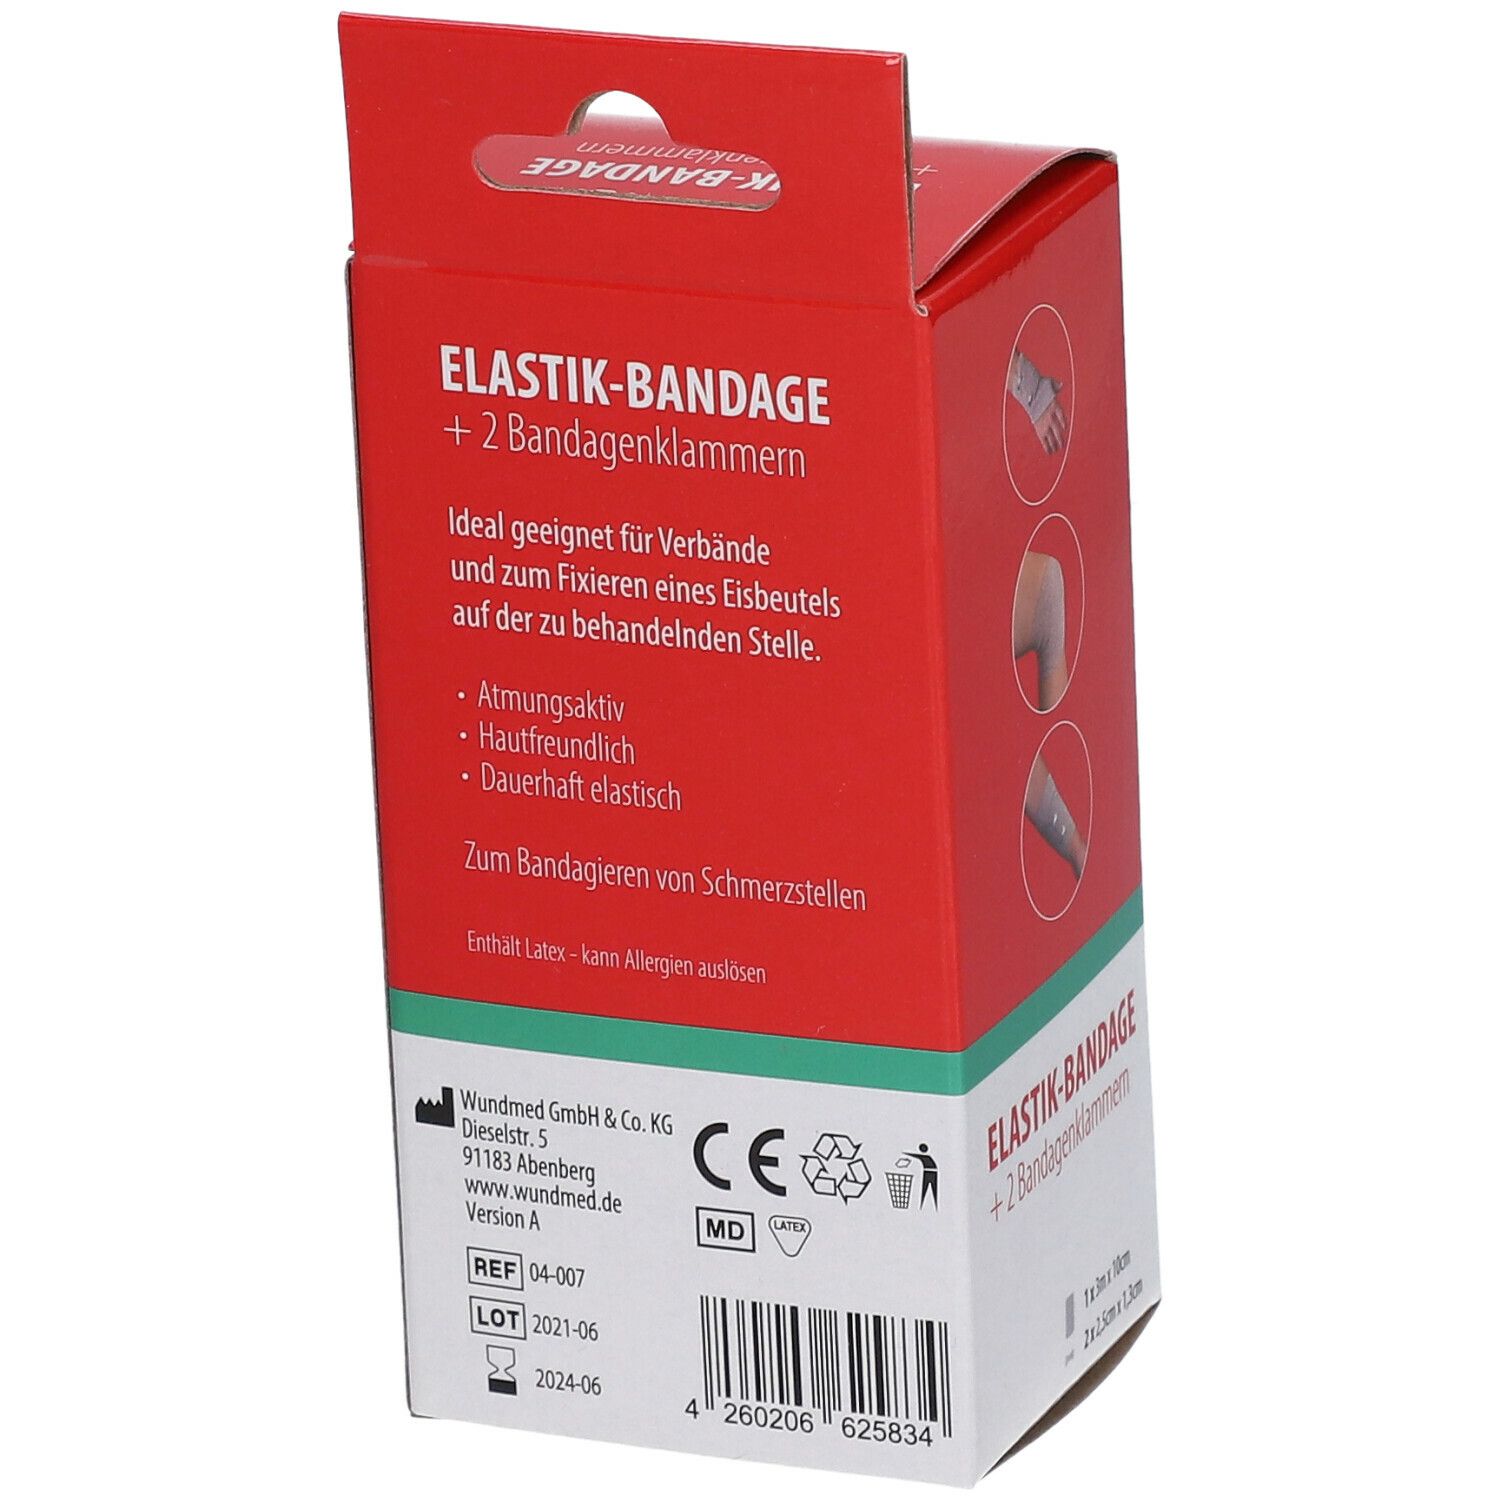 WUNDmed® Elastik-Bandage 10 cm x 3 m mit Bandageklammern